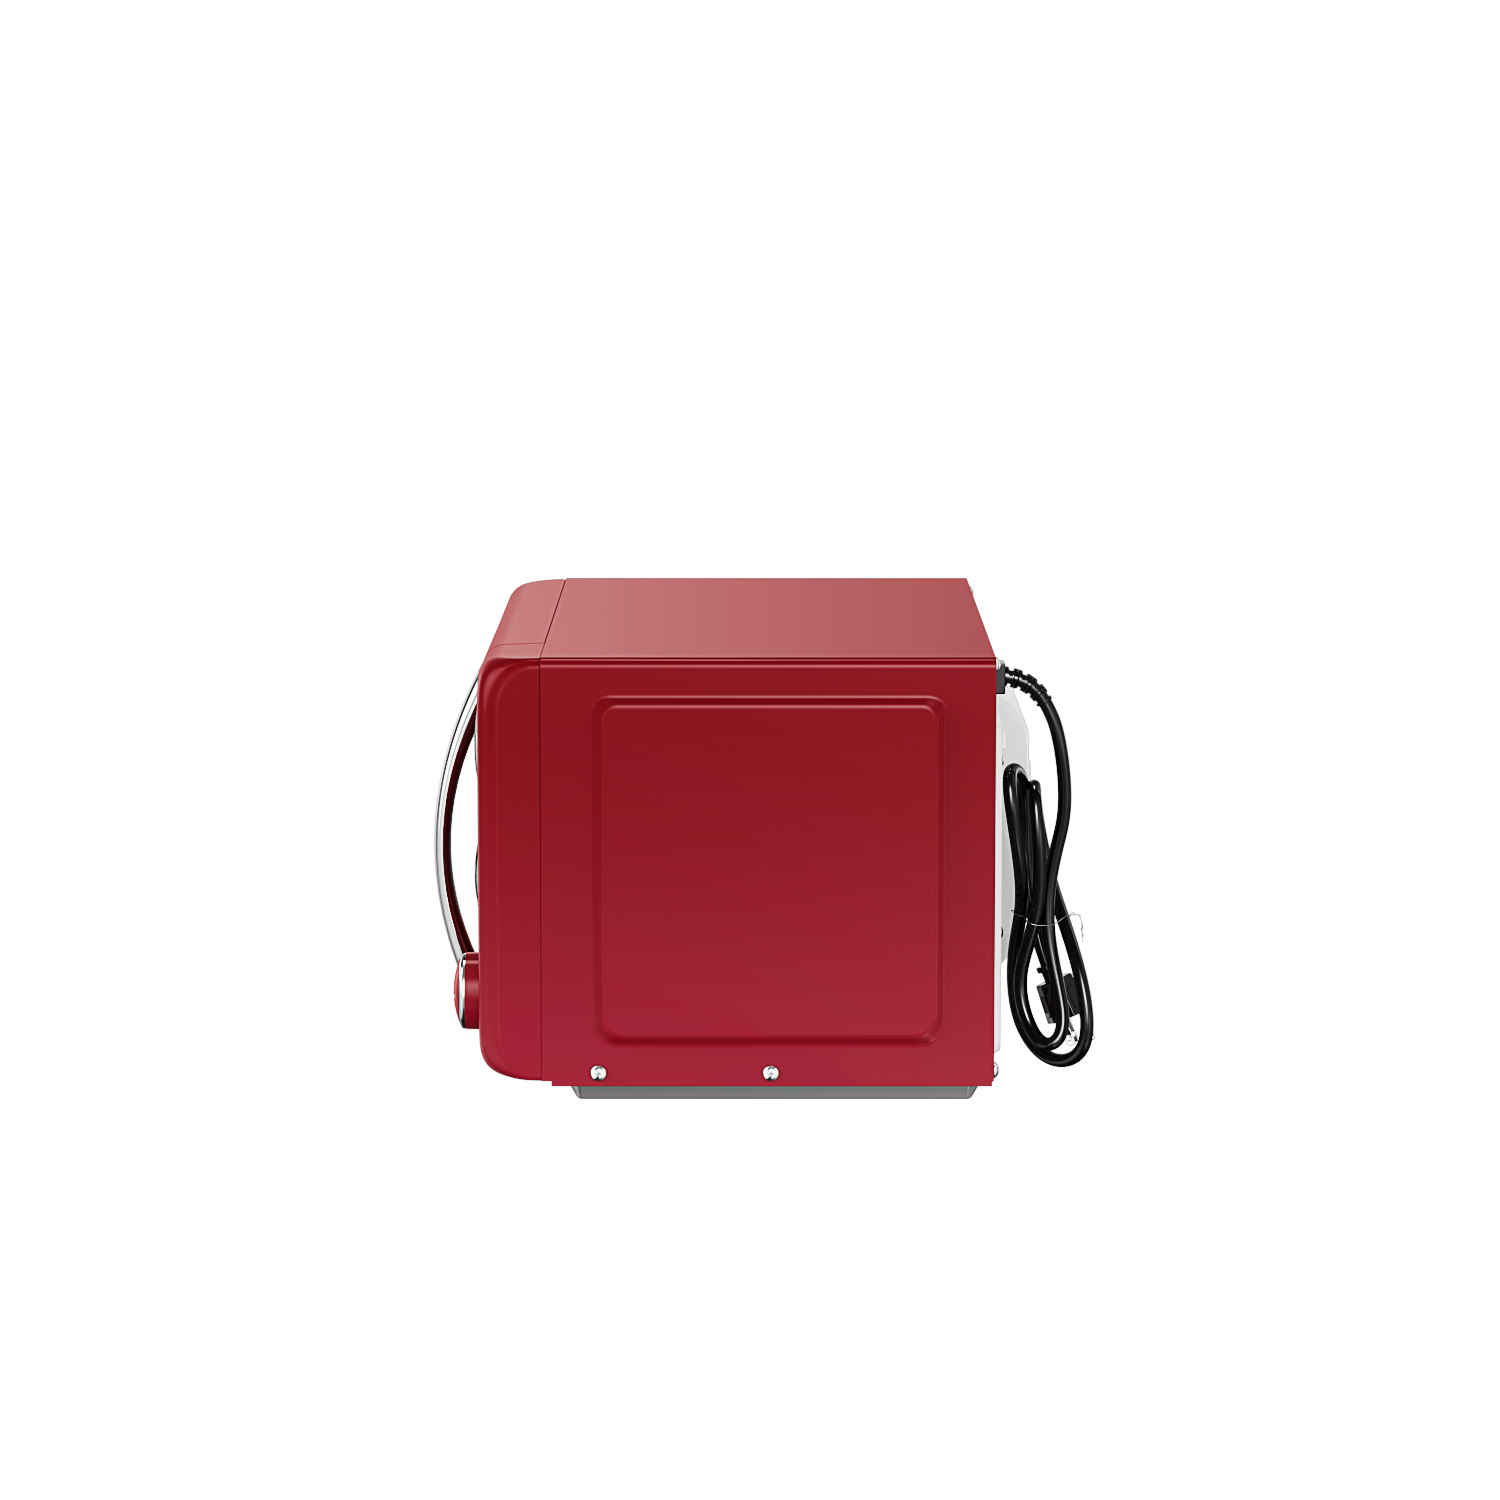  Galanz GLCMKA07RDR-07 - Horno microondas retro, con iluminación  LED, tirador y bloqueo infantil, 0.7 pies cúbicos, color rojo retro : Hogar  y Cocina